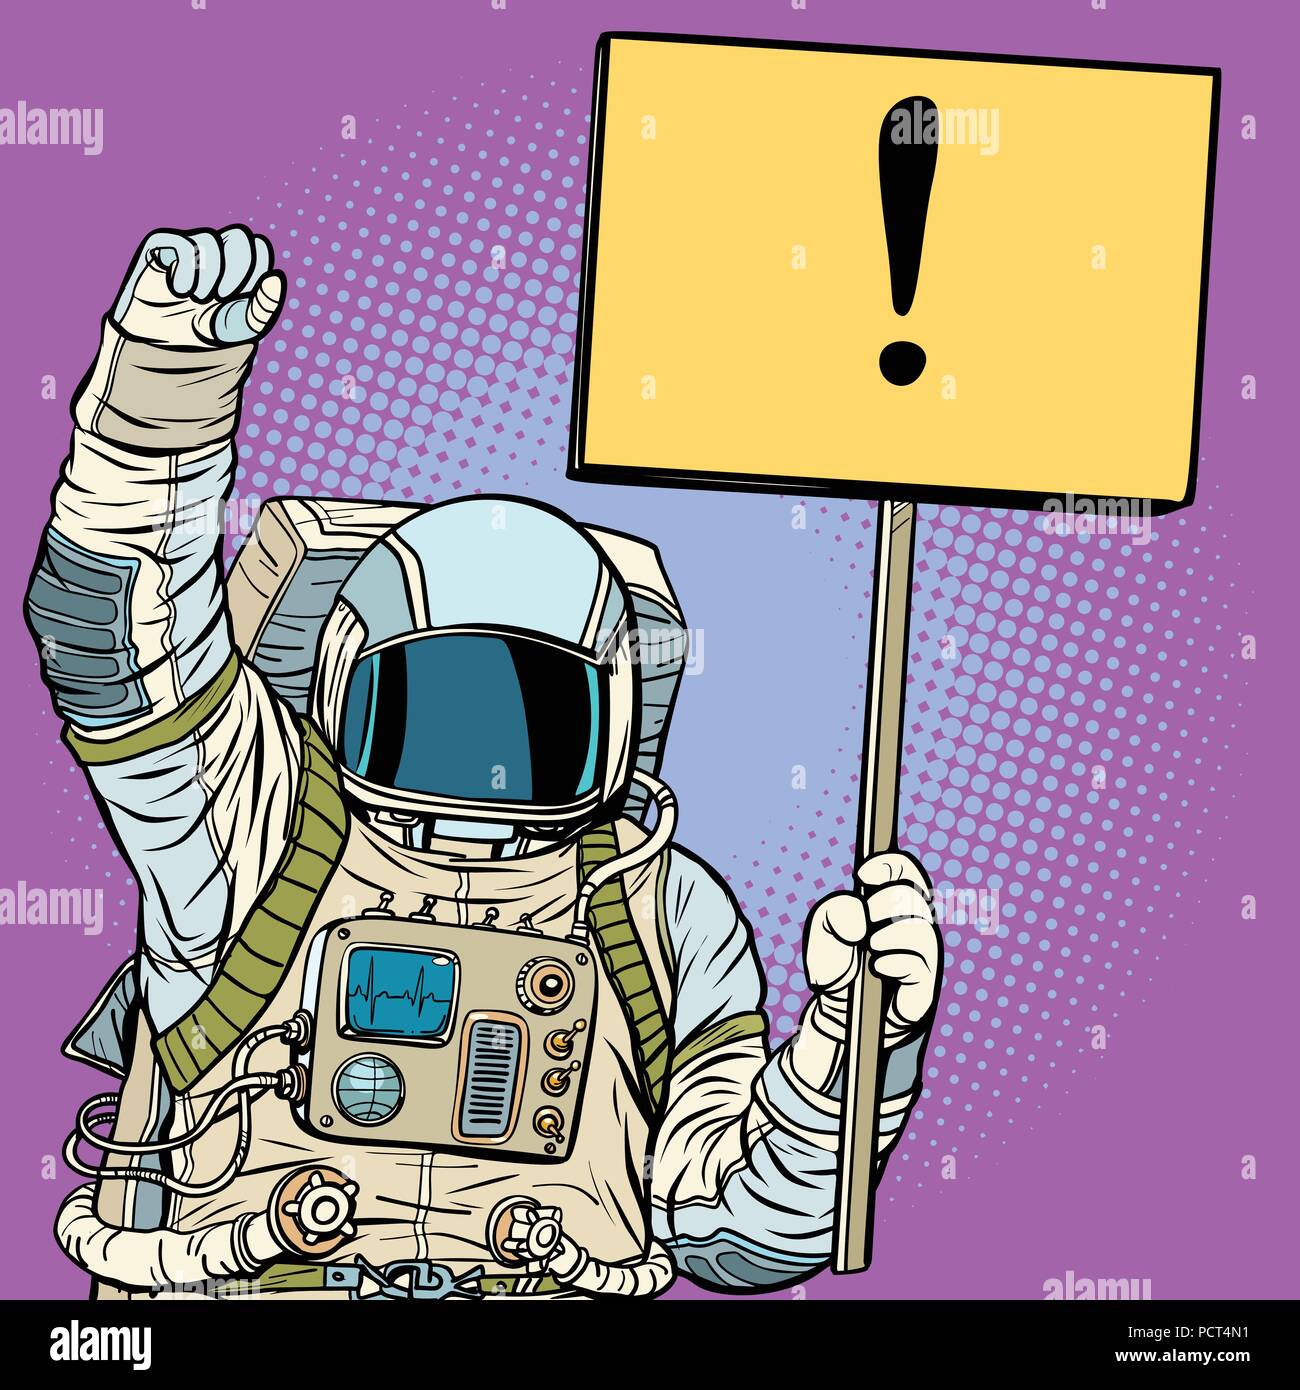 Les protestations de l'astronaute avec une affiche Illustration de Vecteur